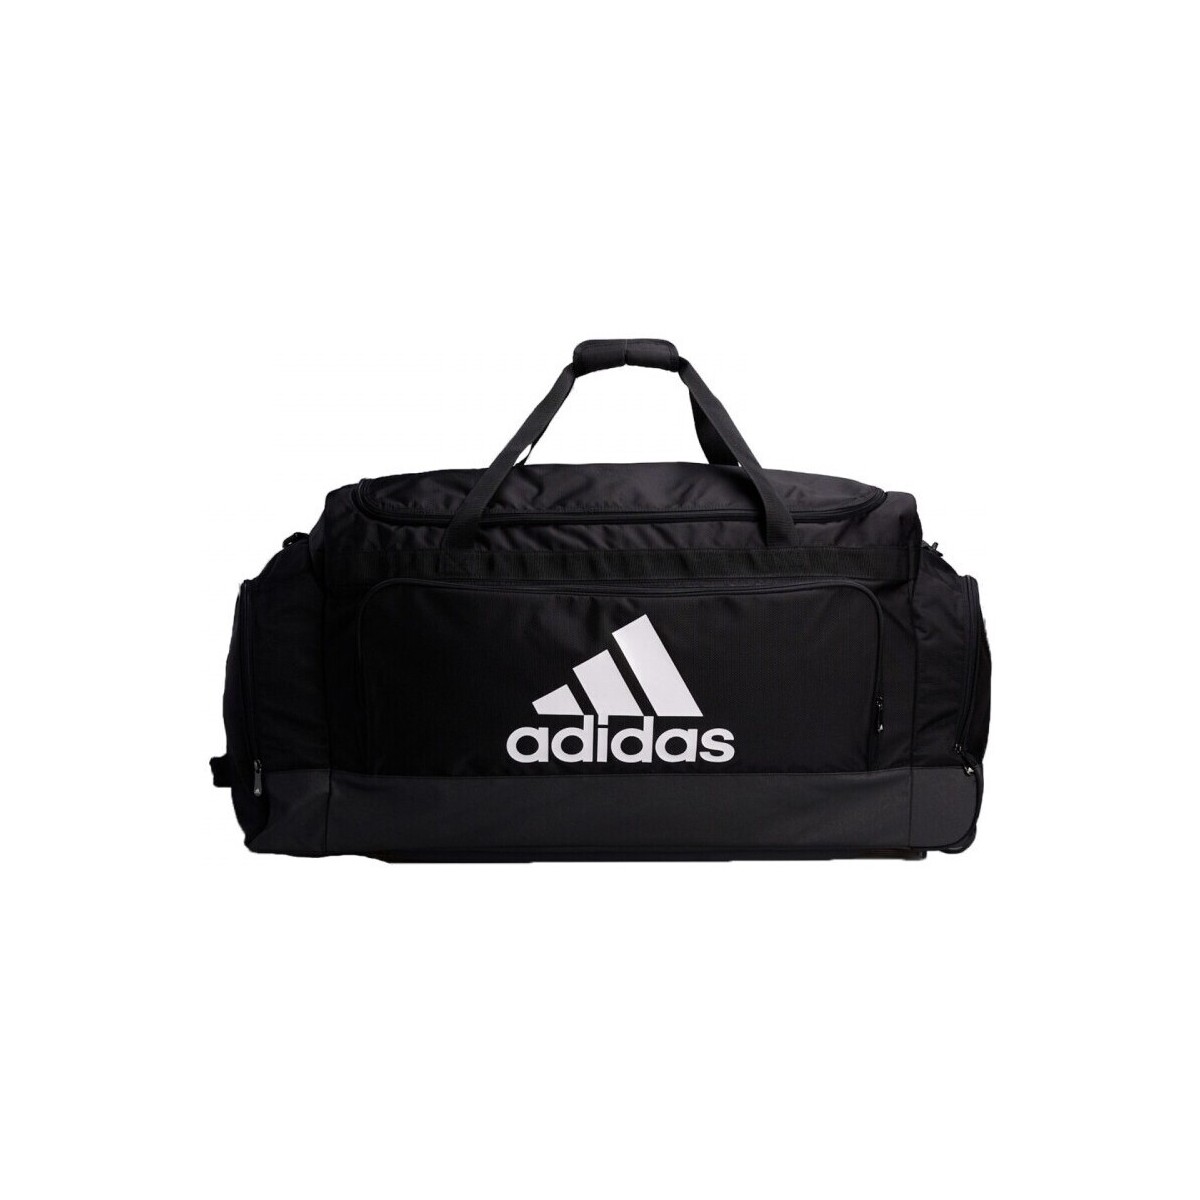 adidas Originals Team Bag Xxlw 25709176 1200 A